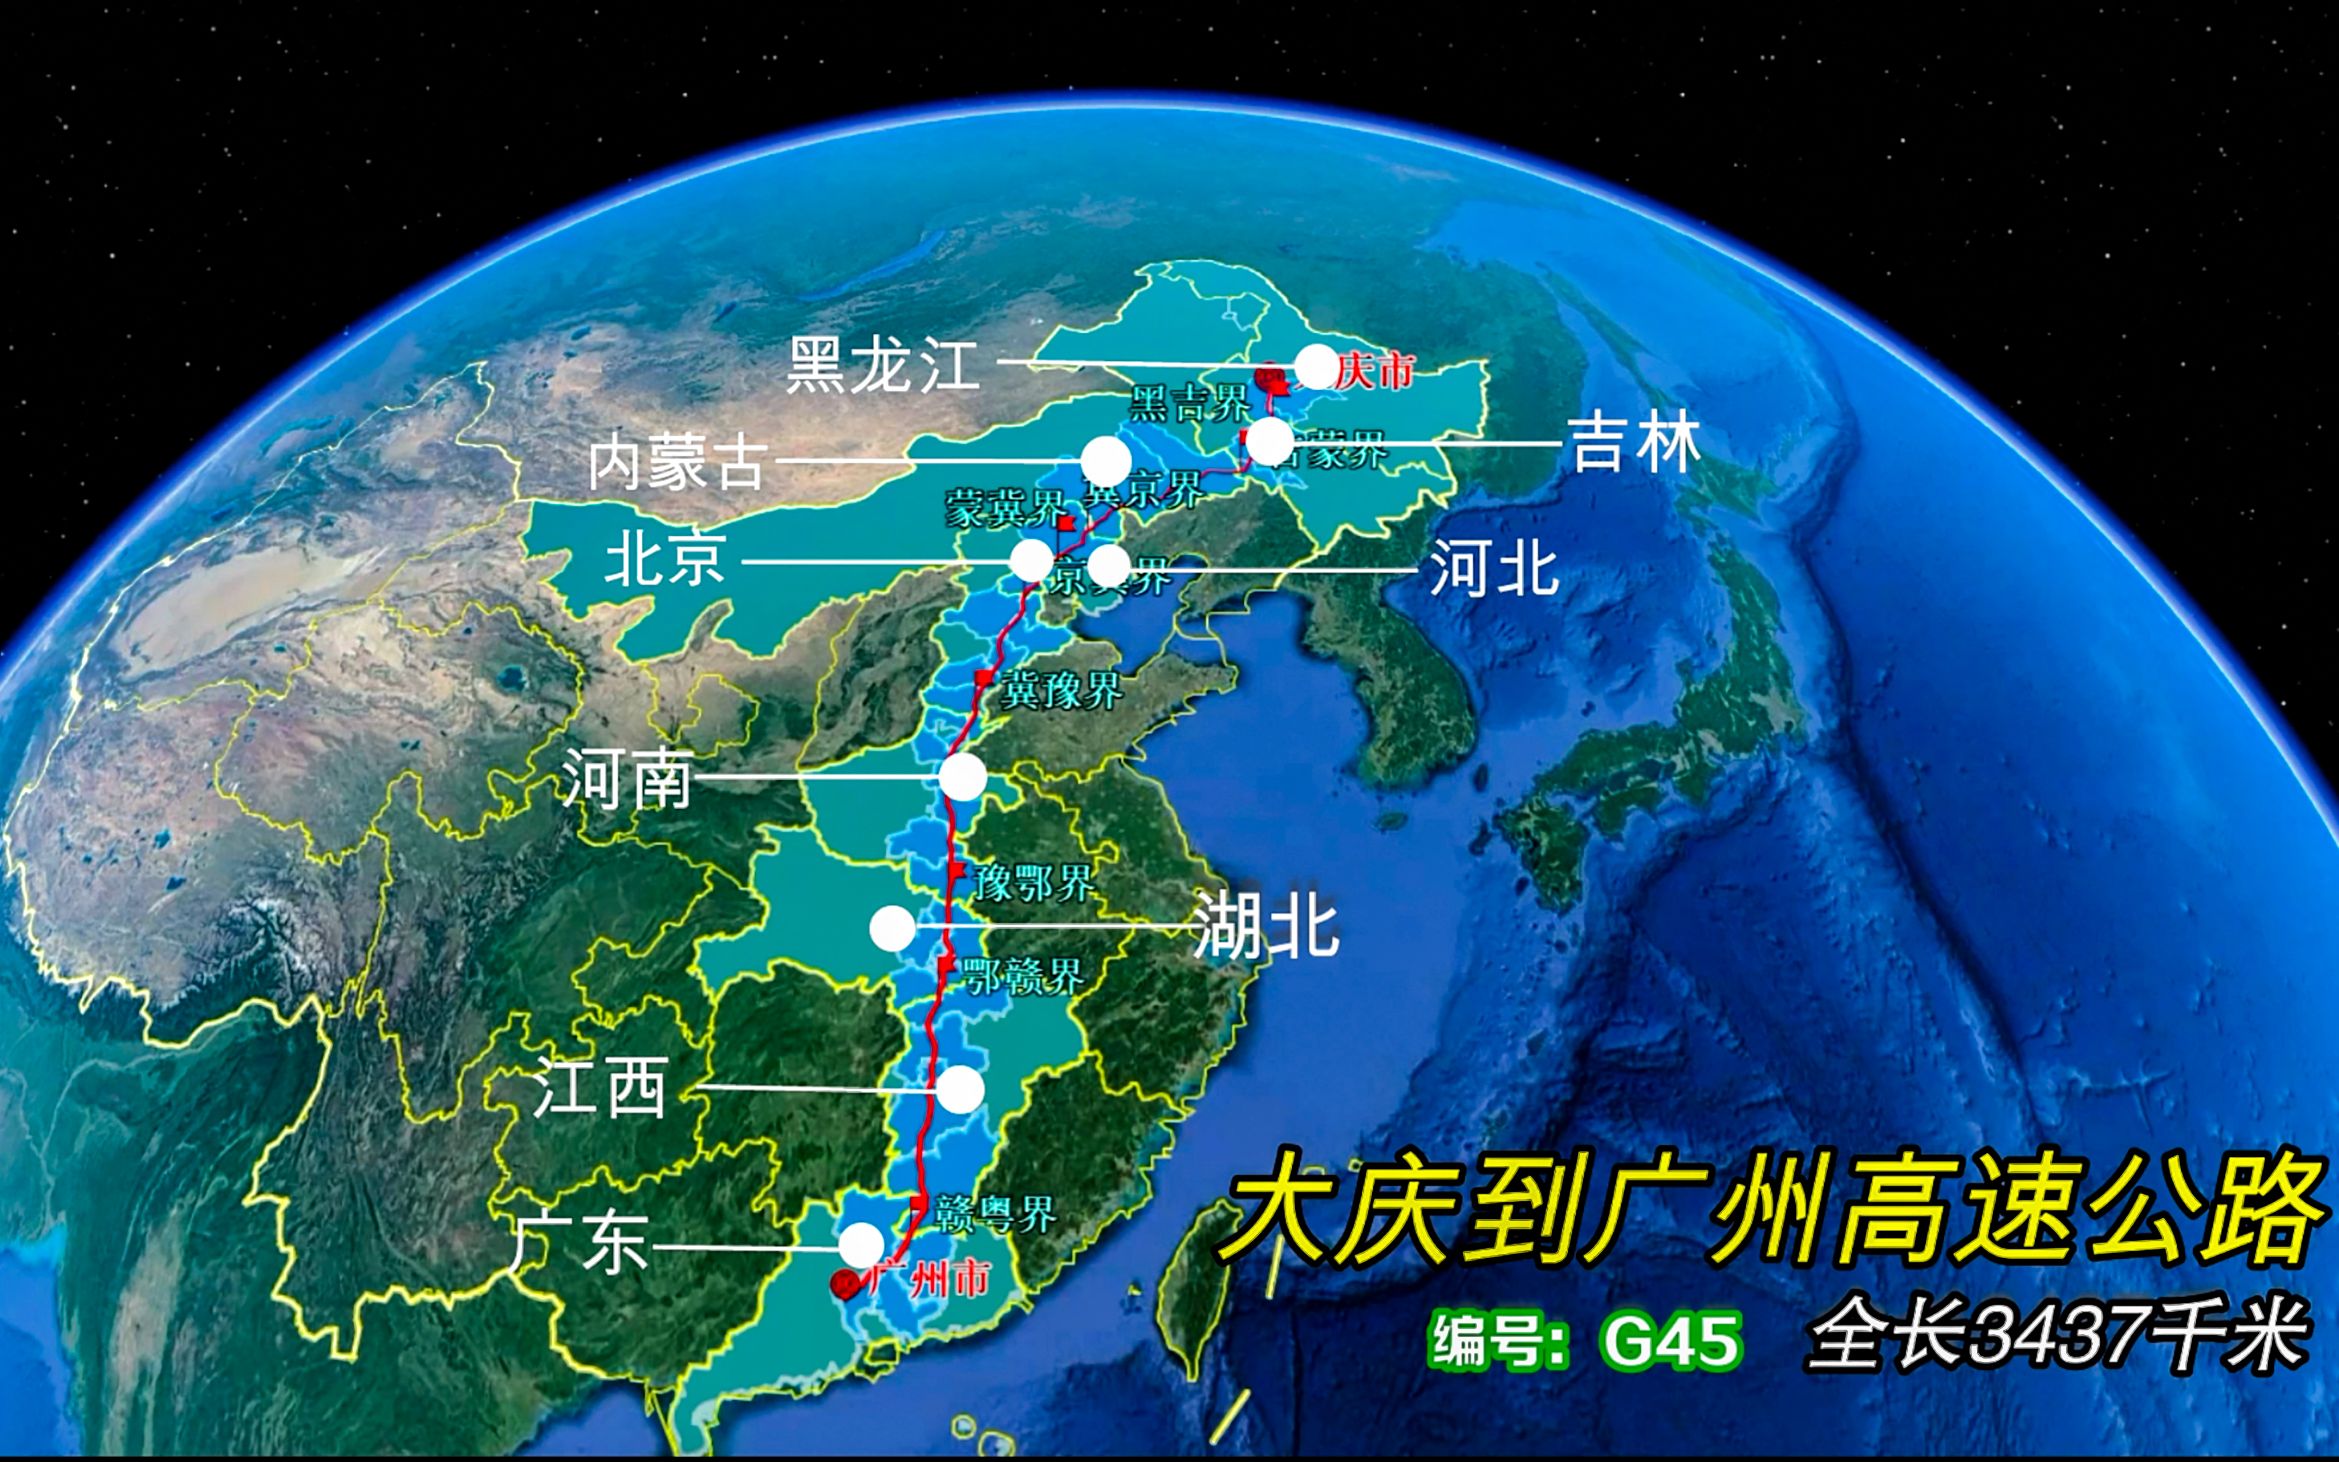 大广高速复线规划图图片